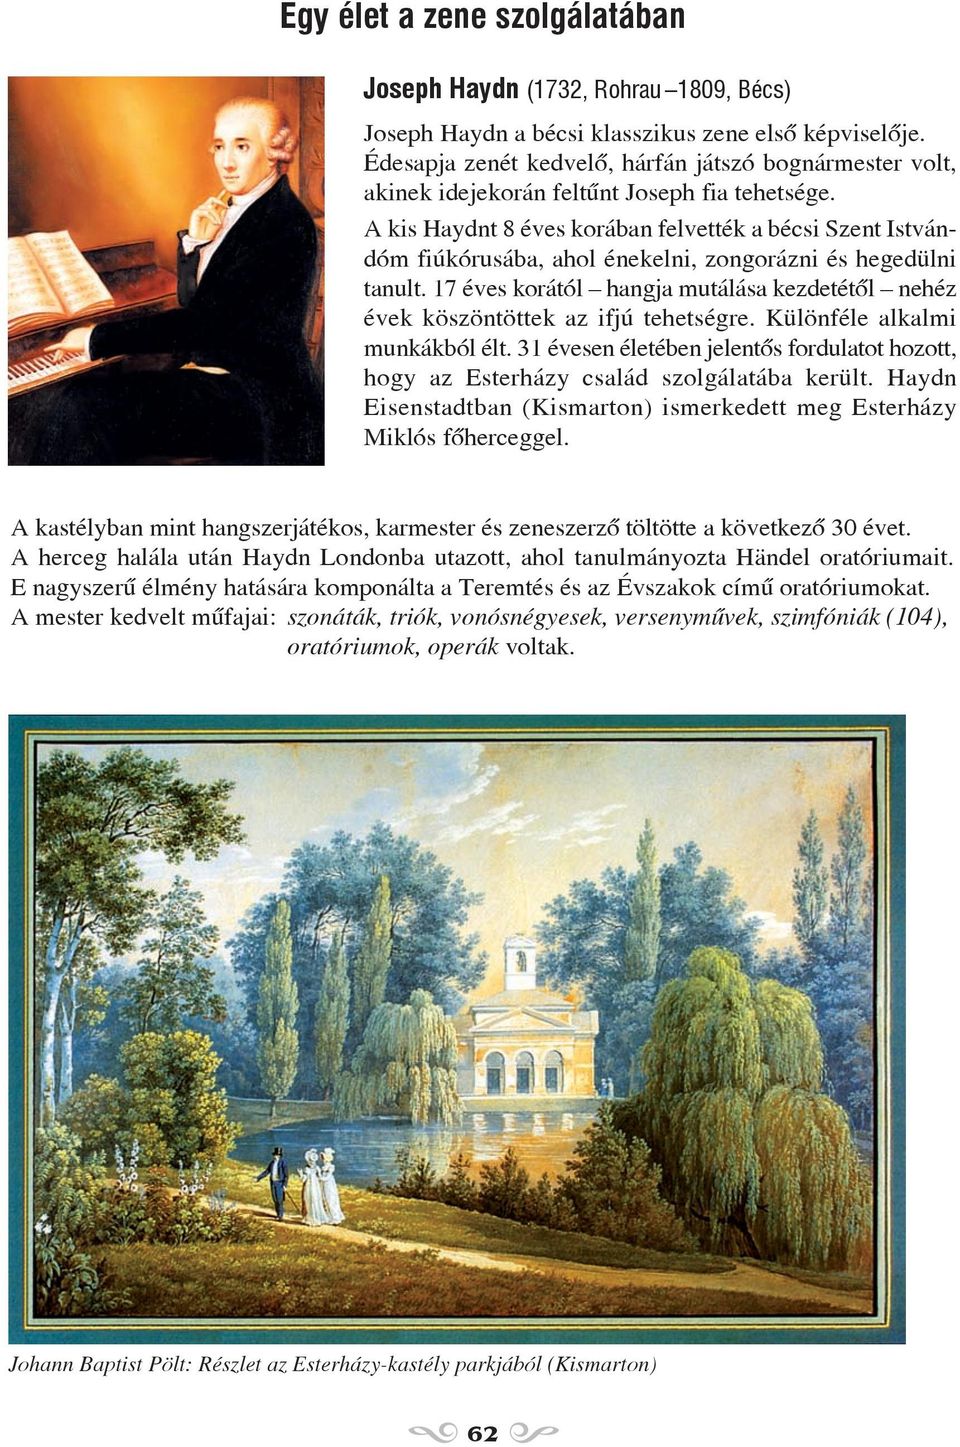 A kis Haydnt 8 éves korában felvették a bécsi Szent Istvándóm fiúkórusába, ahol énekelni, zongorázni és hegedülni tanult.